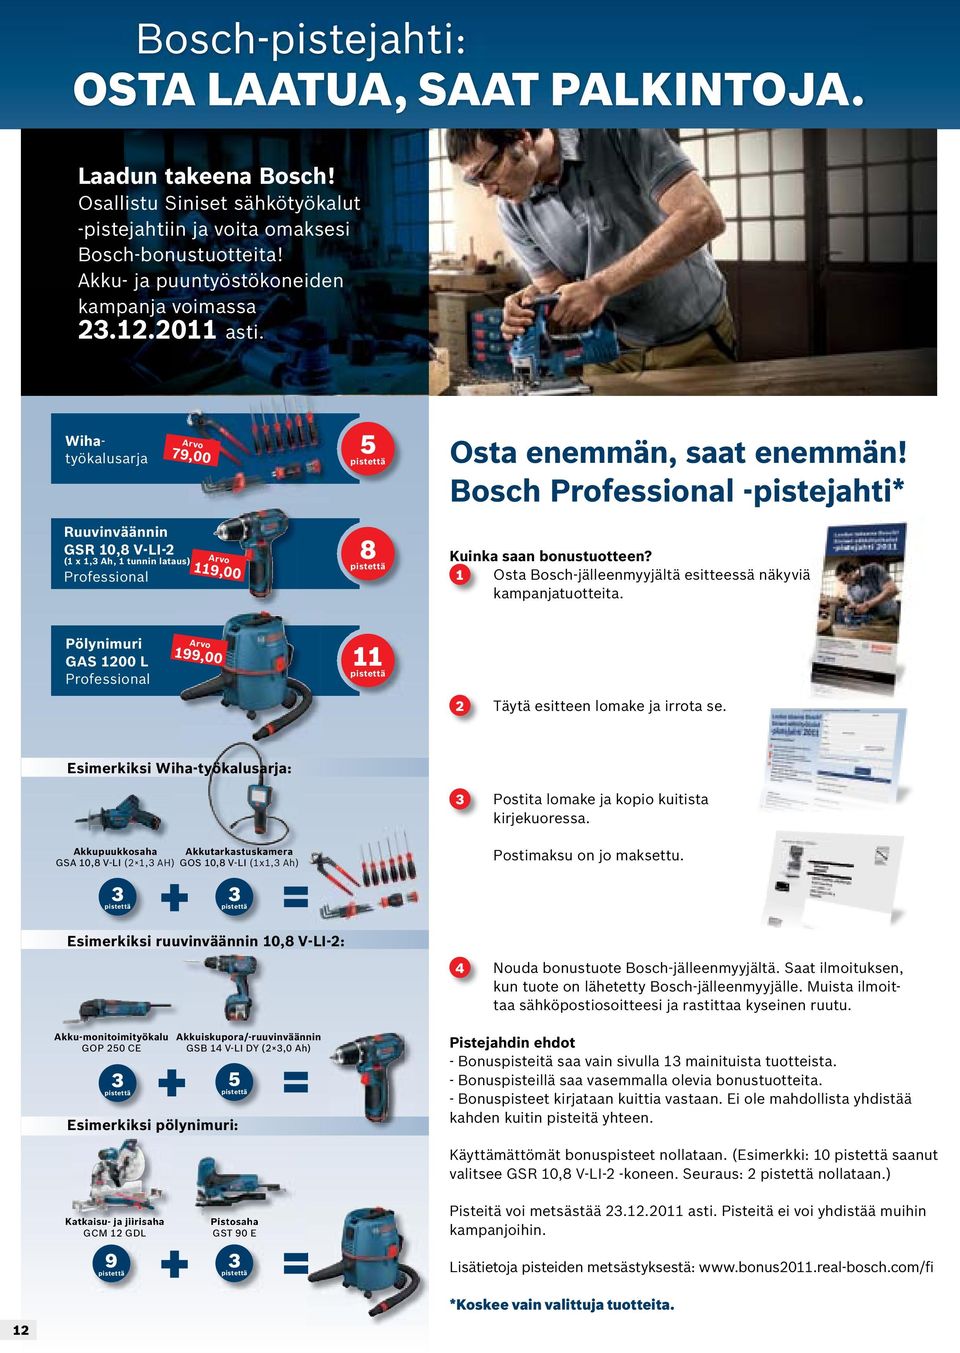 Bosch Professional -pistejahti* Ruuvinväännin GSR 10,8 V-LI-2 (1 x 1, Ah, 1 tunnin lataus) Professional Arvo 119,00 8 Kuinka saan bonustuotteen?